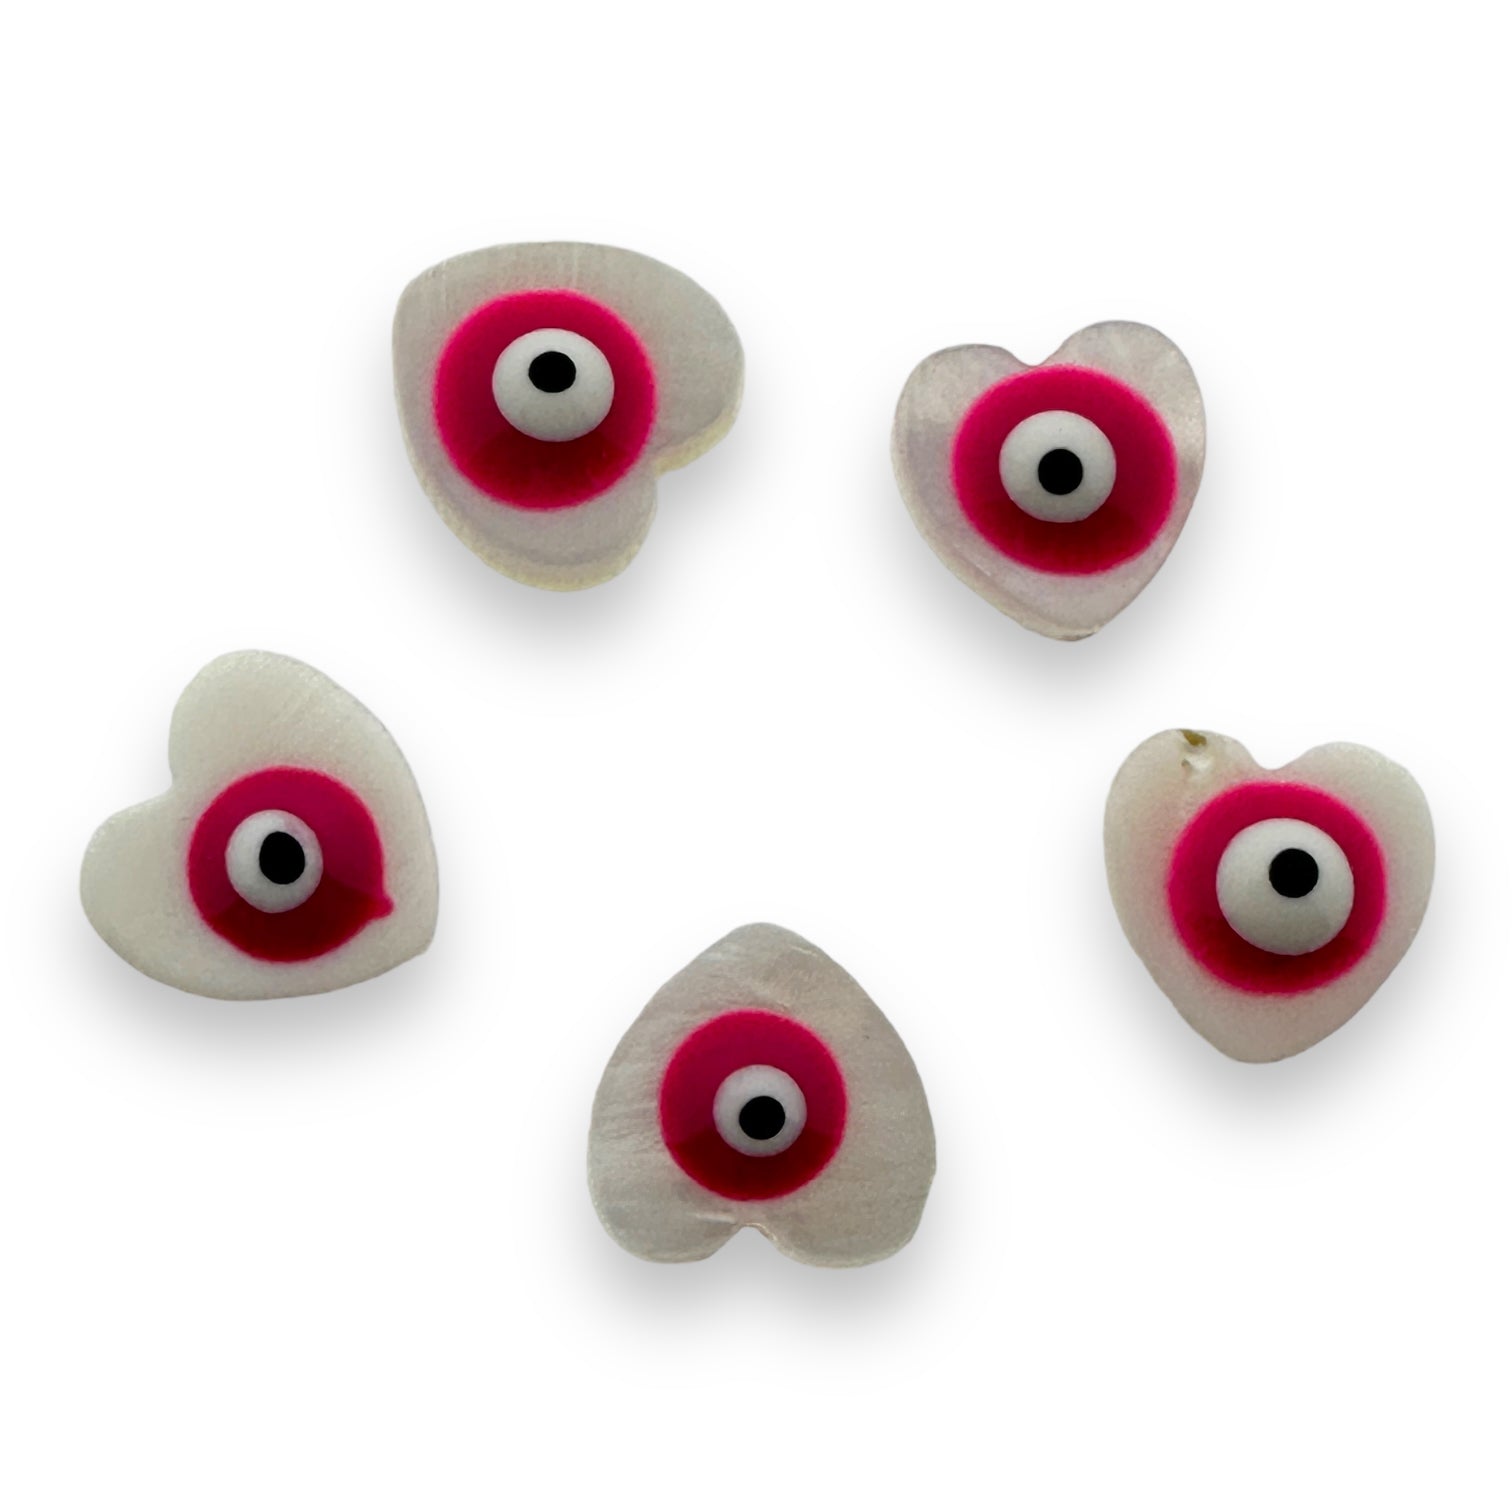 Zoetwaterschelp kraal hartje evil eye roze 10mm-Kralen-Kraaltjes van Renate